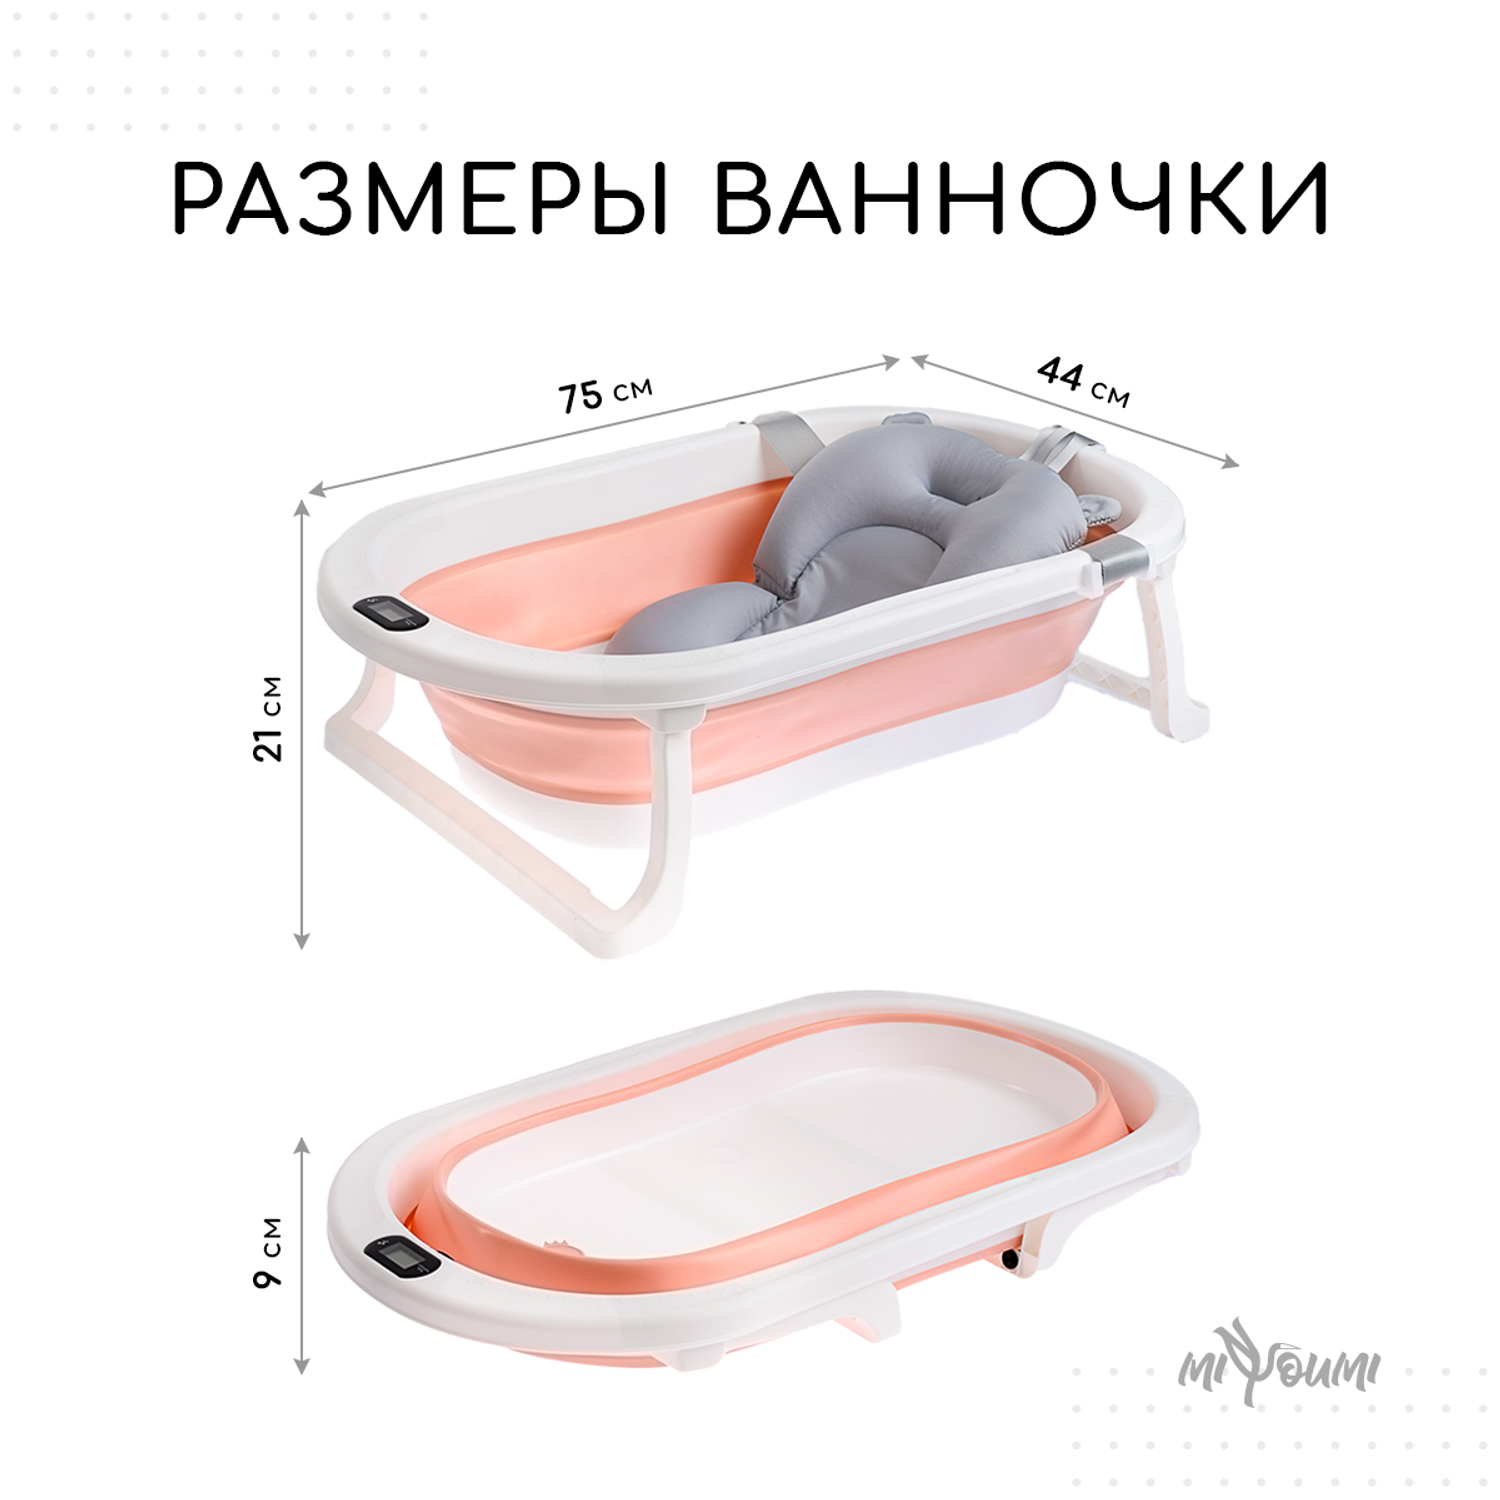 Ванночка для новорожденных Miyoumi с матрасиком и термометром складная - Blush - фото 10